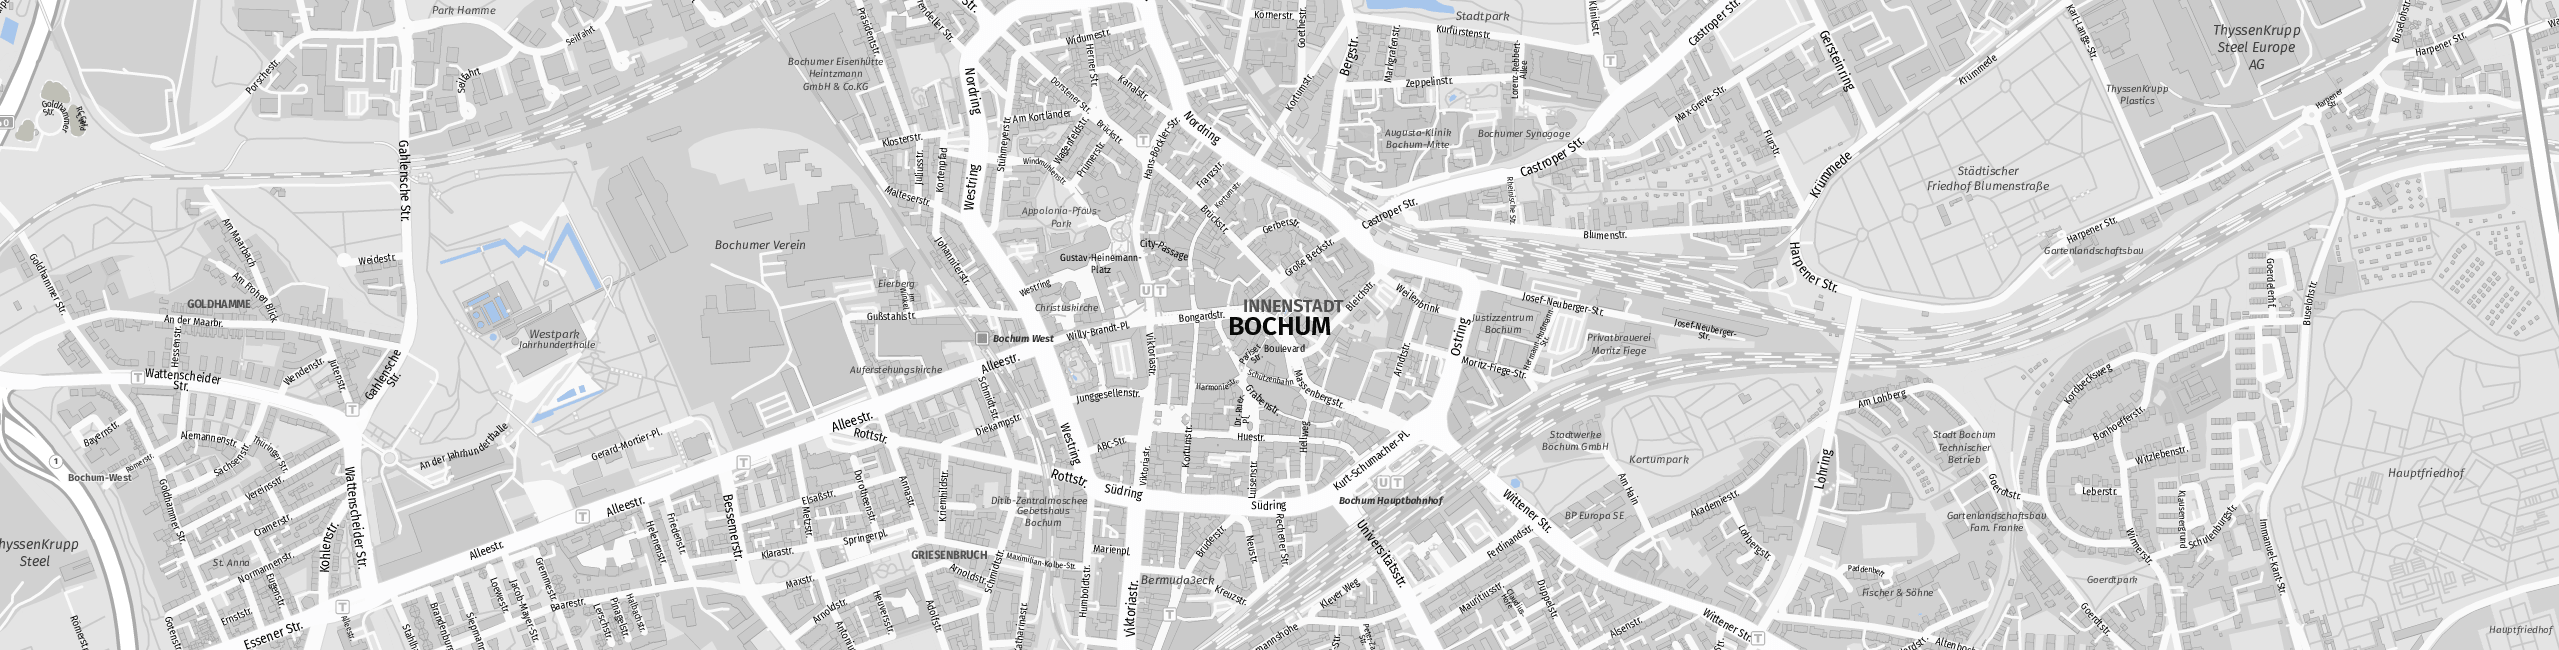 Stadtplan Bochum zum Downloaden.